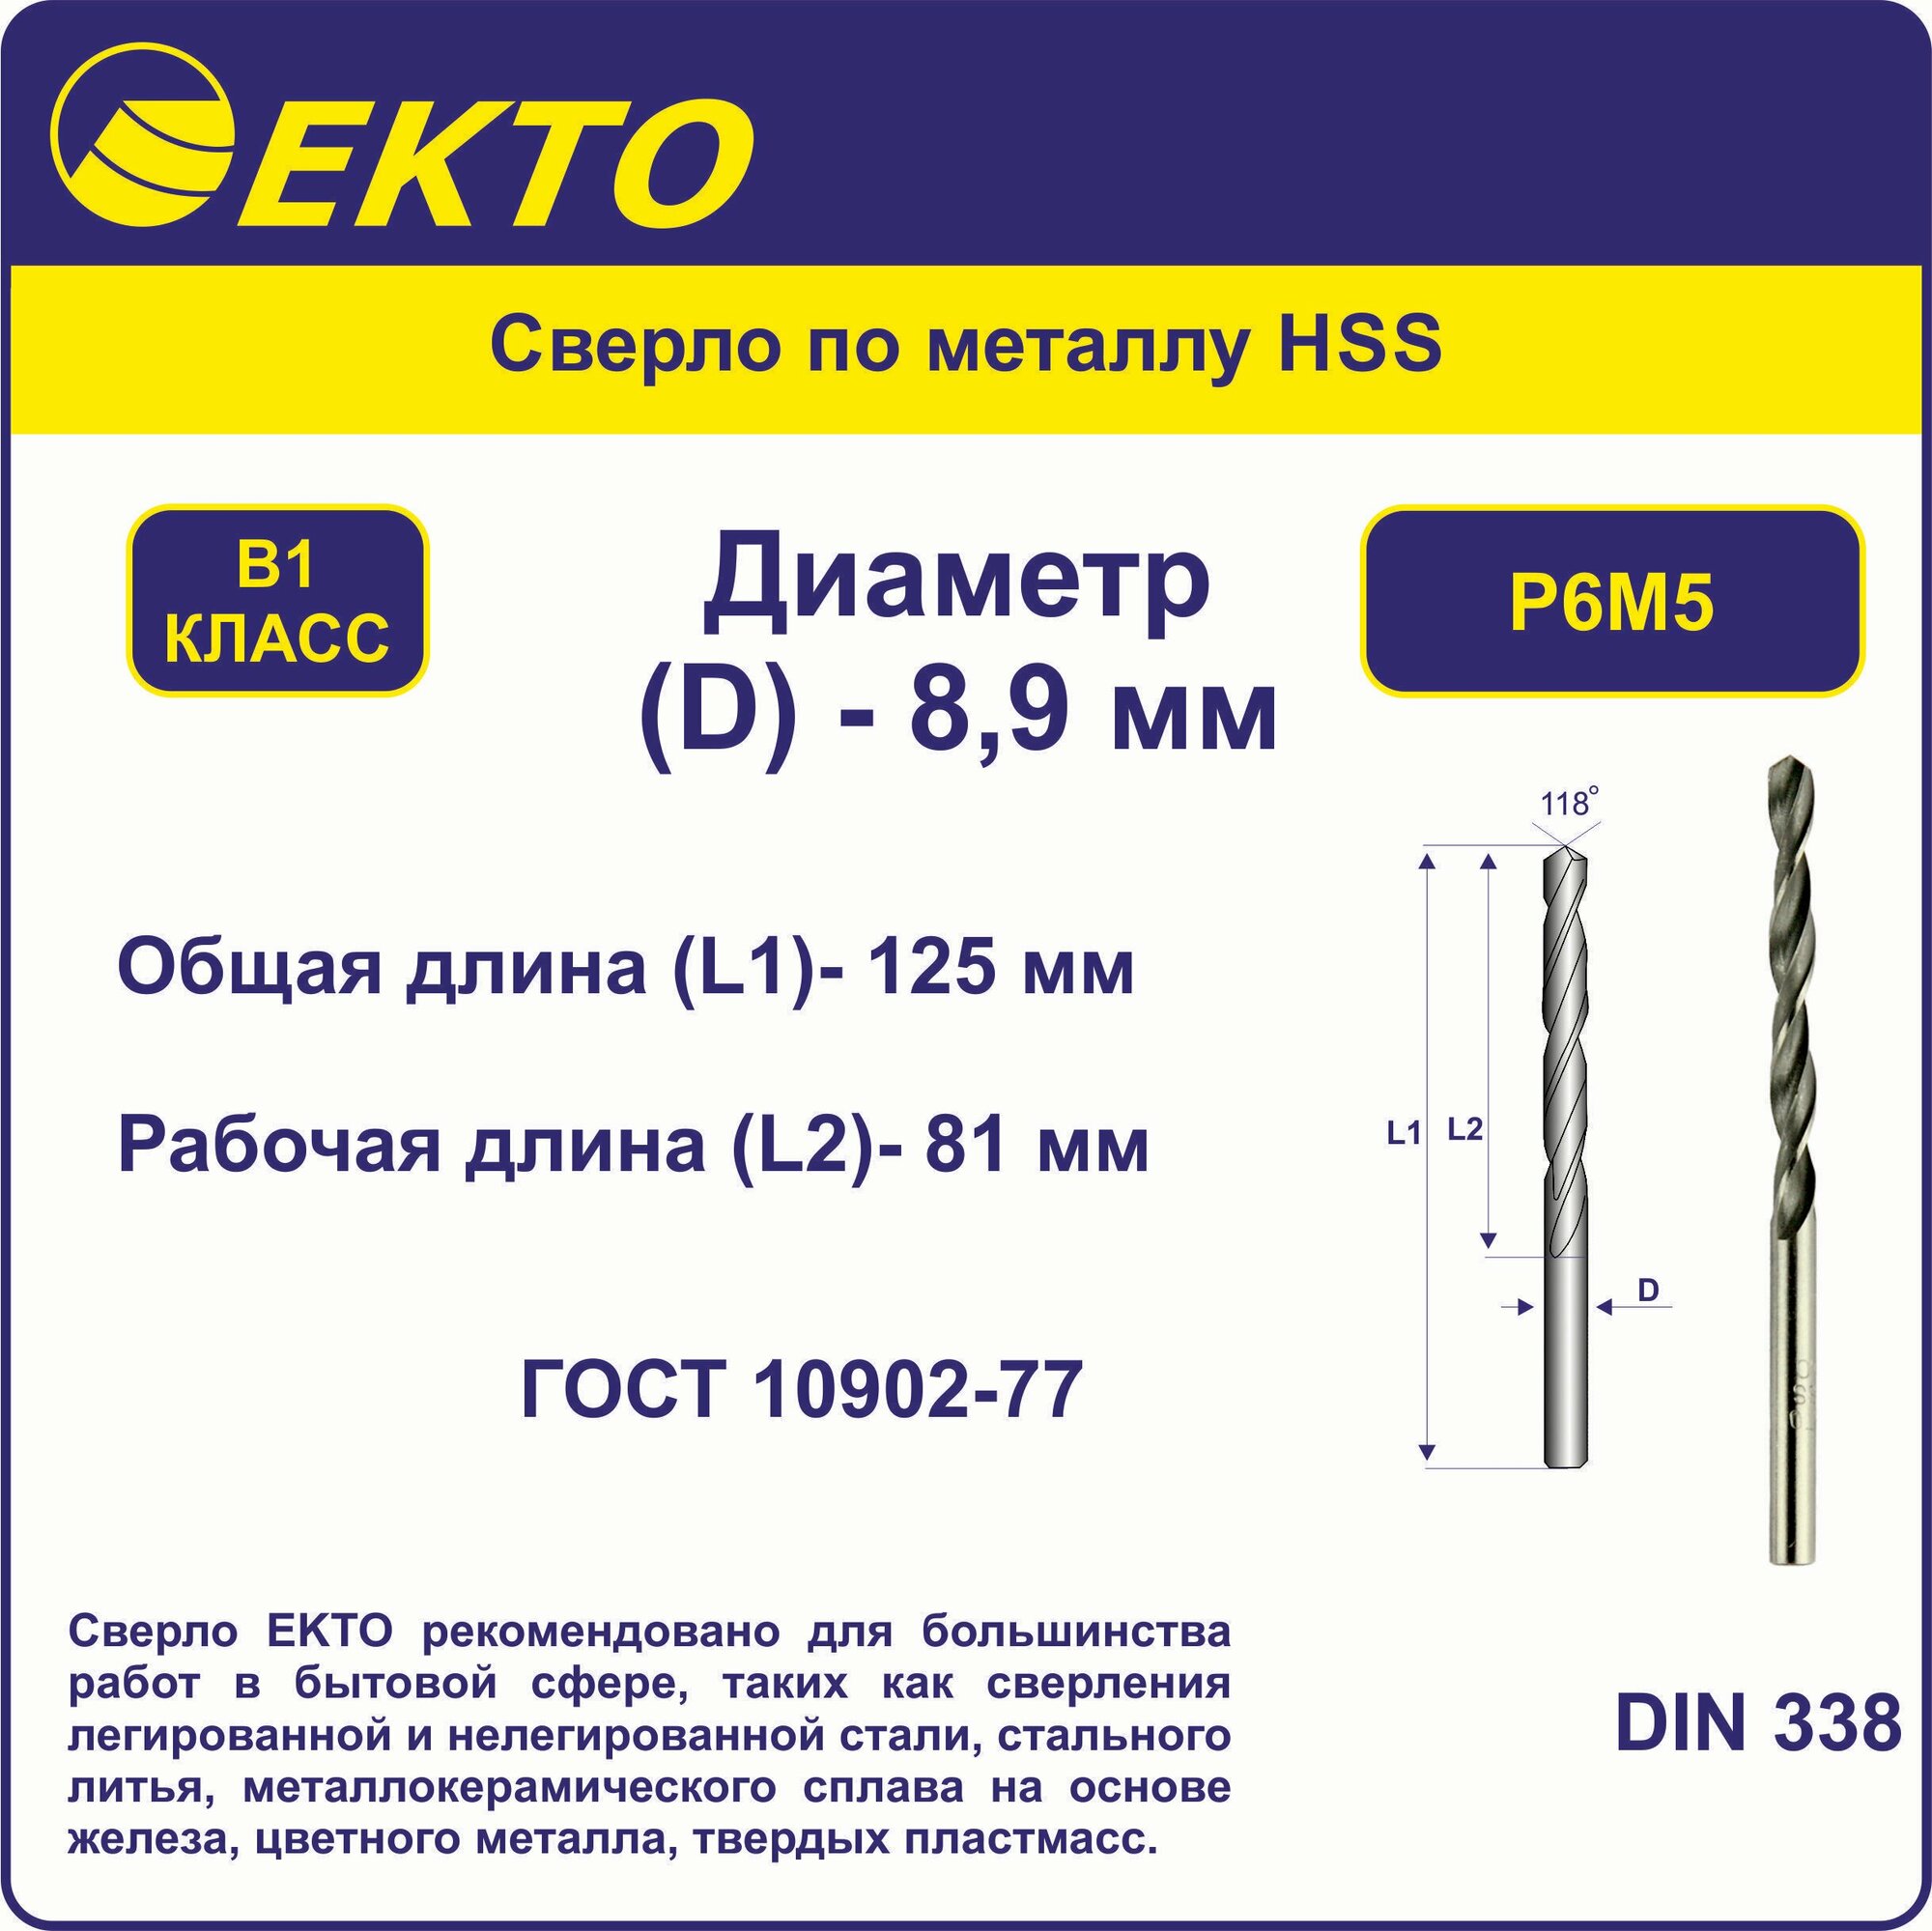 Сверло по металлу HSS 8,9 мм цилиндрический хвостовик EKTO